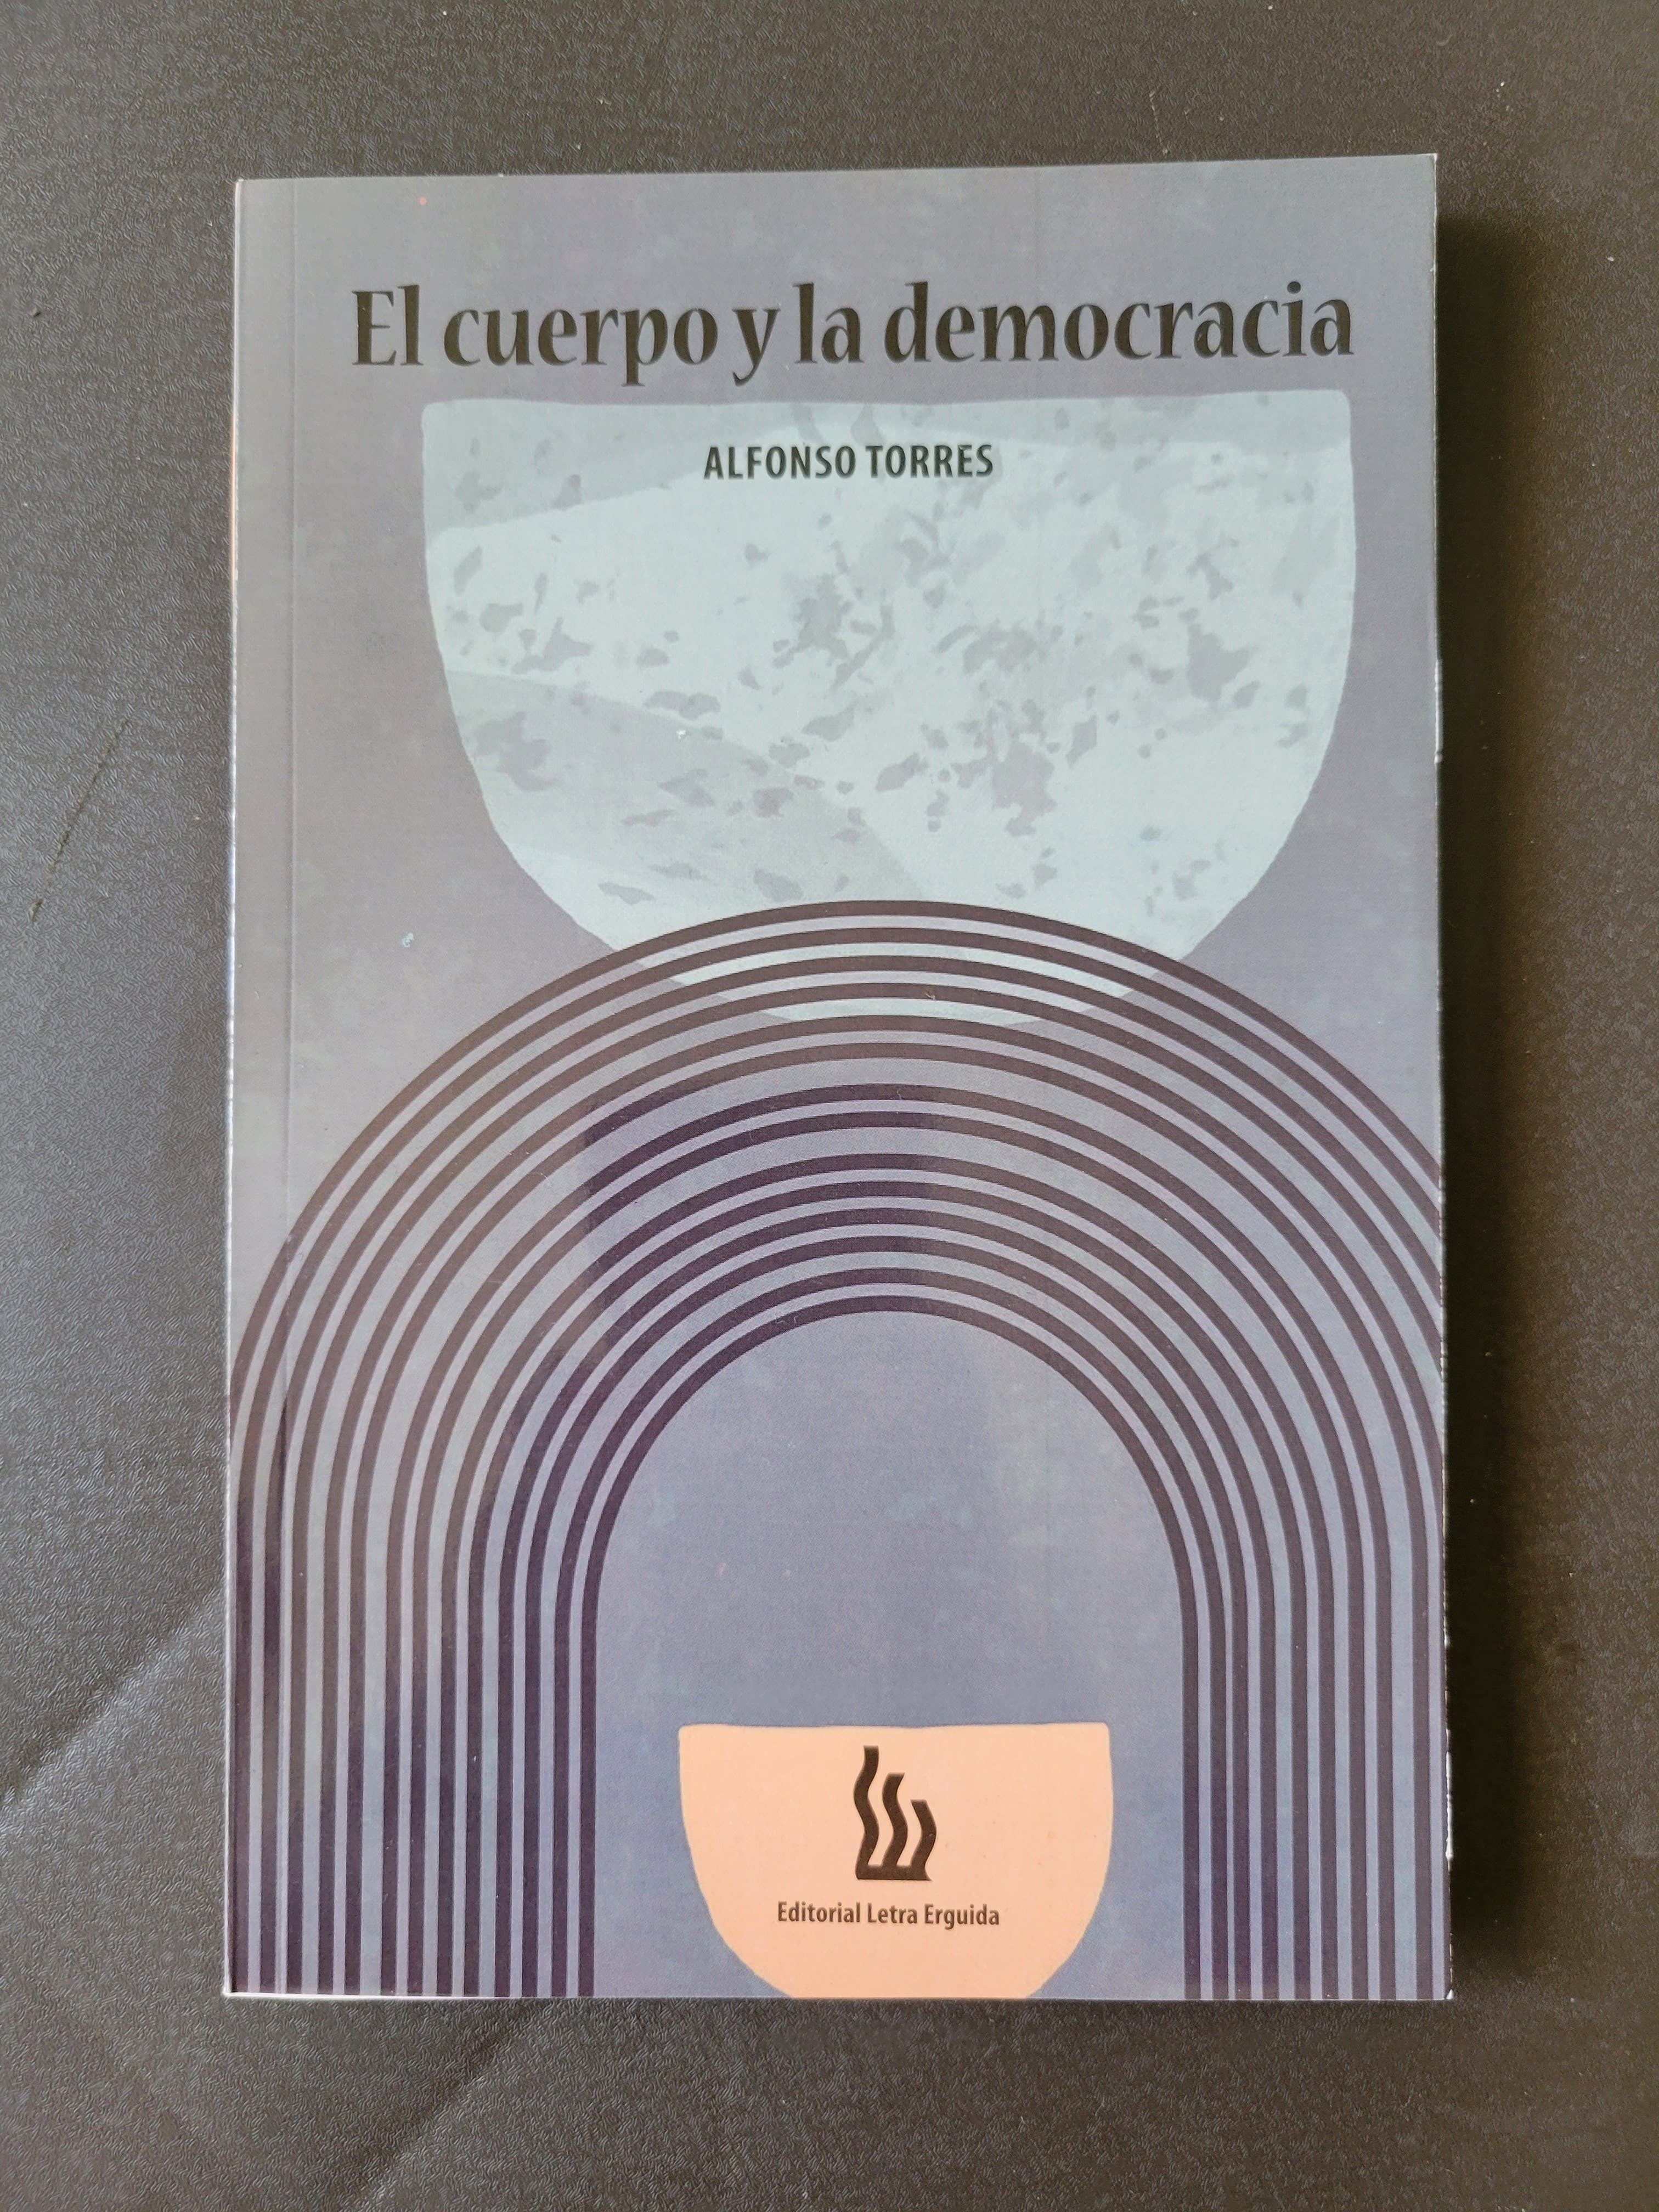 Pondrán a circular el libro El cuerpo y la democracia